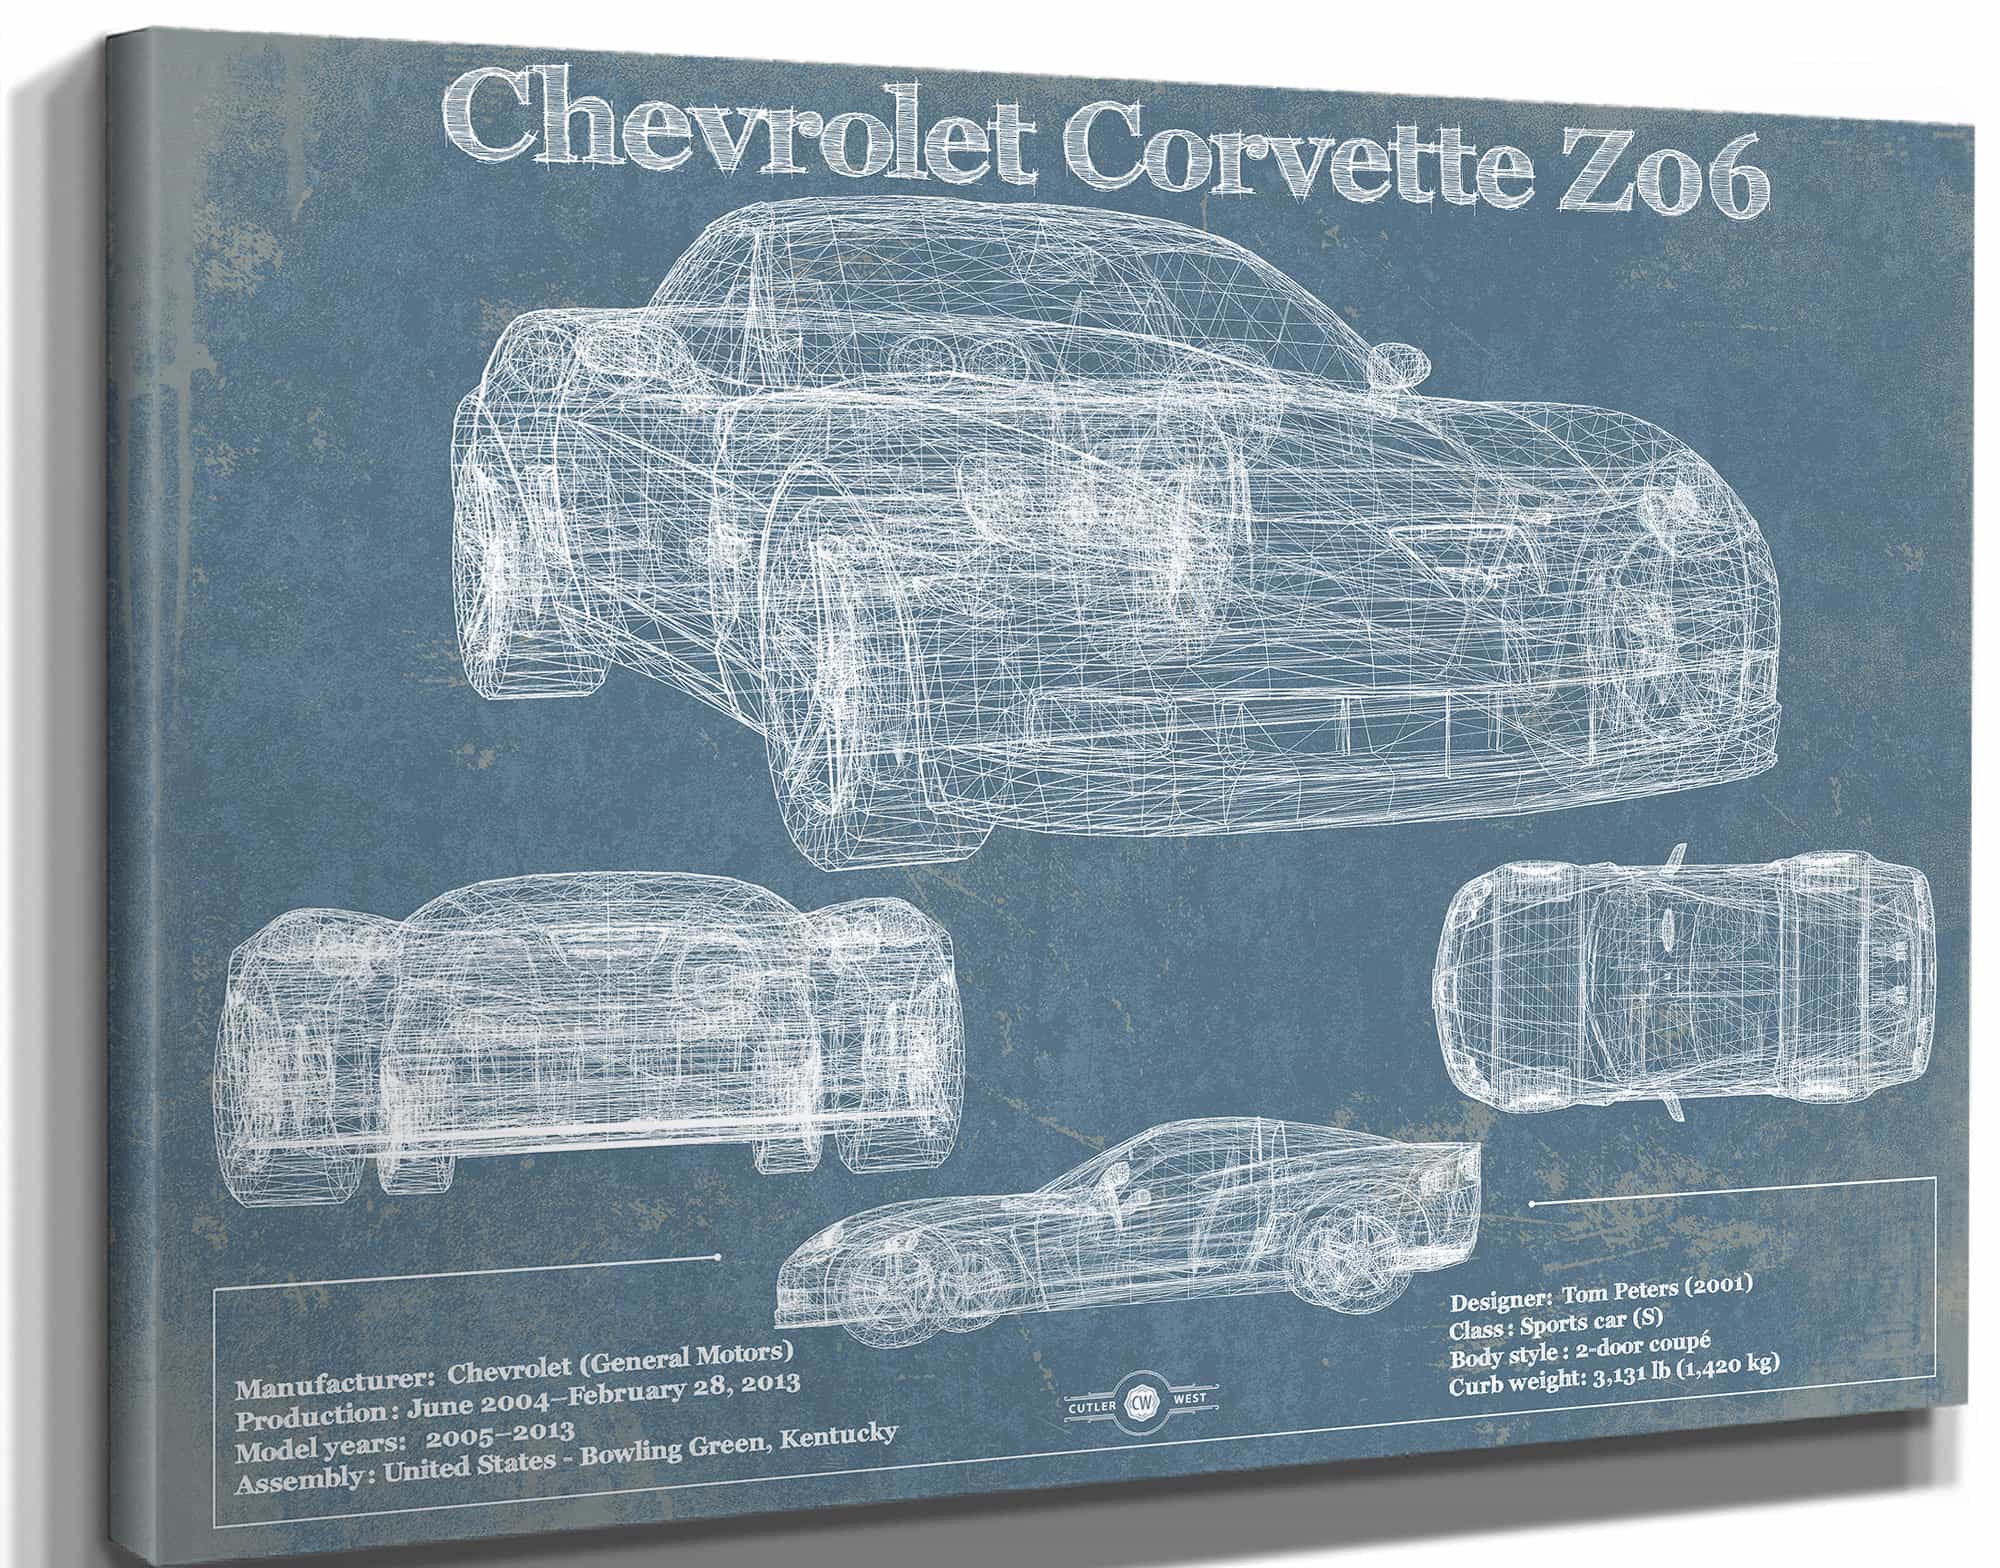 Chevrolet Corvette Z06 Blueprint Vintage Auto Print